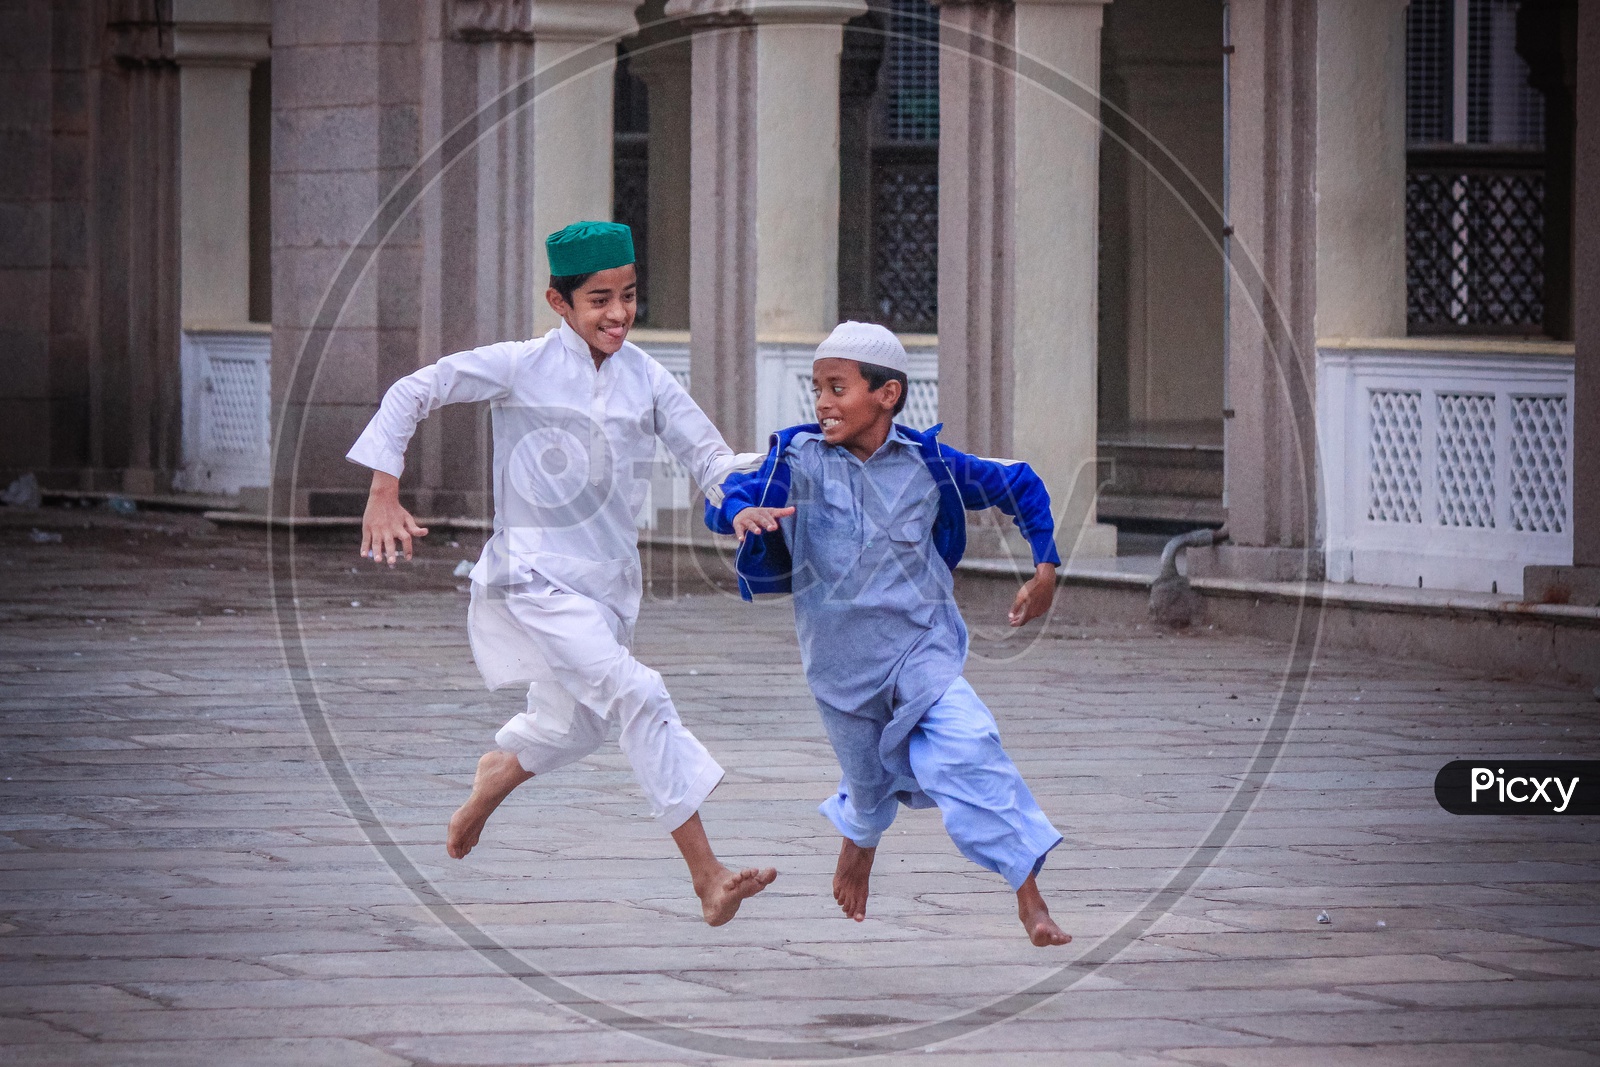 Muslim Kids playing